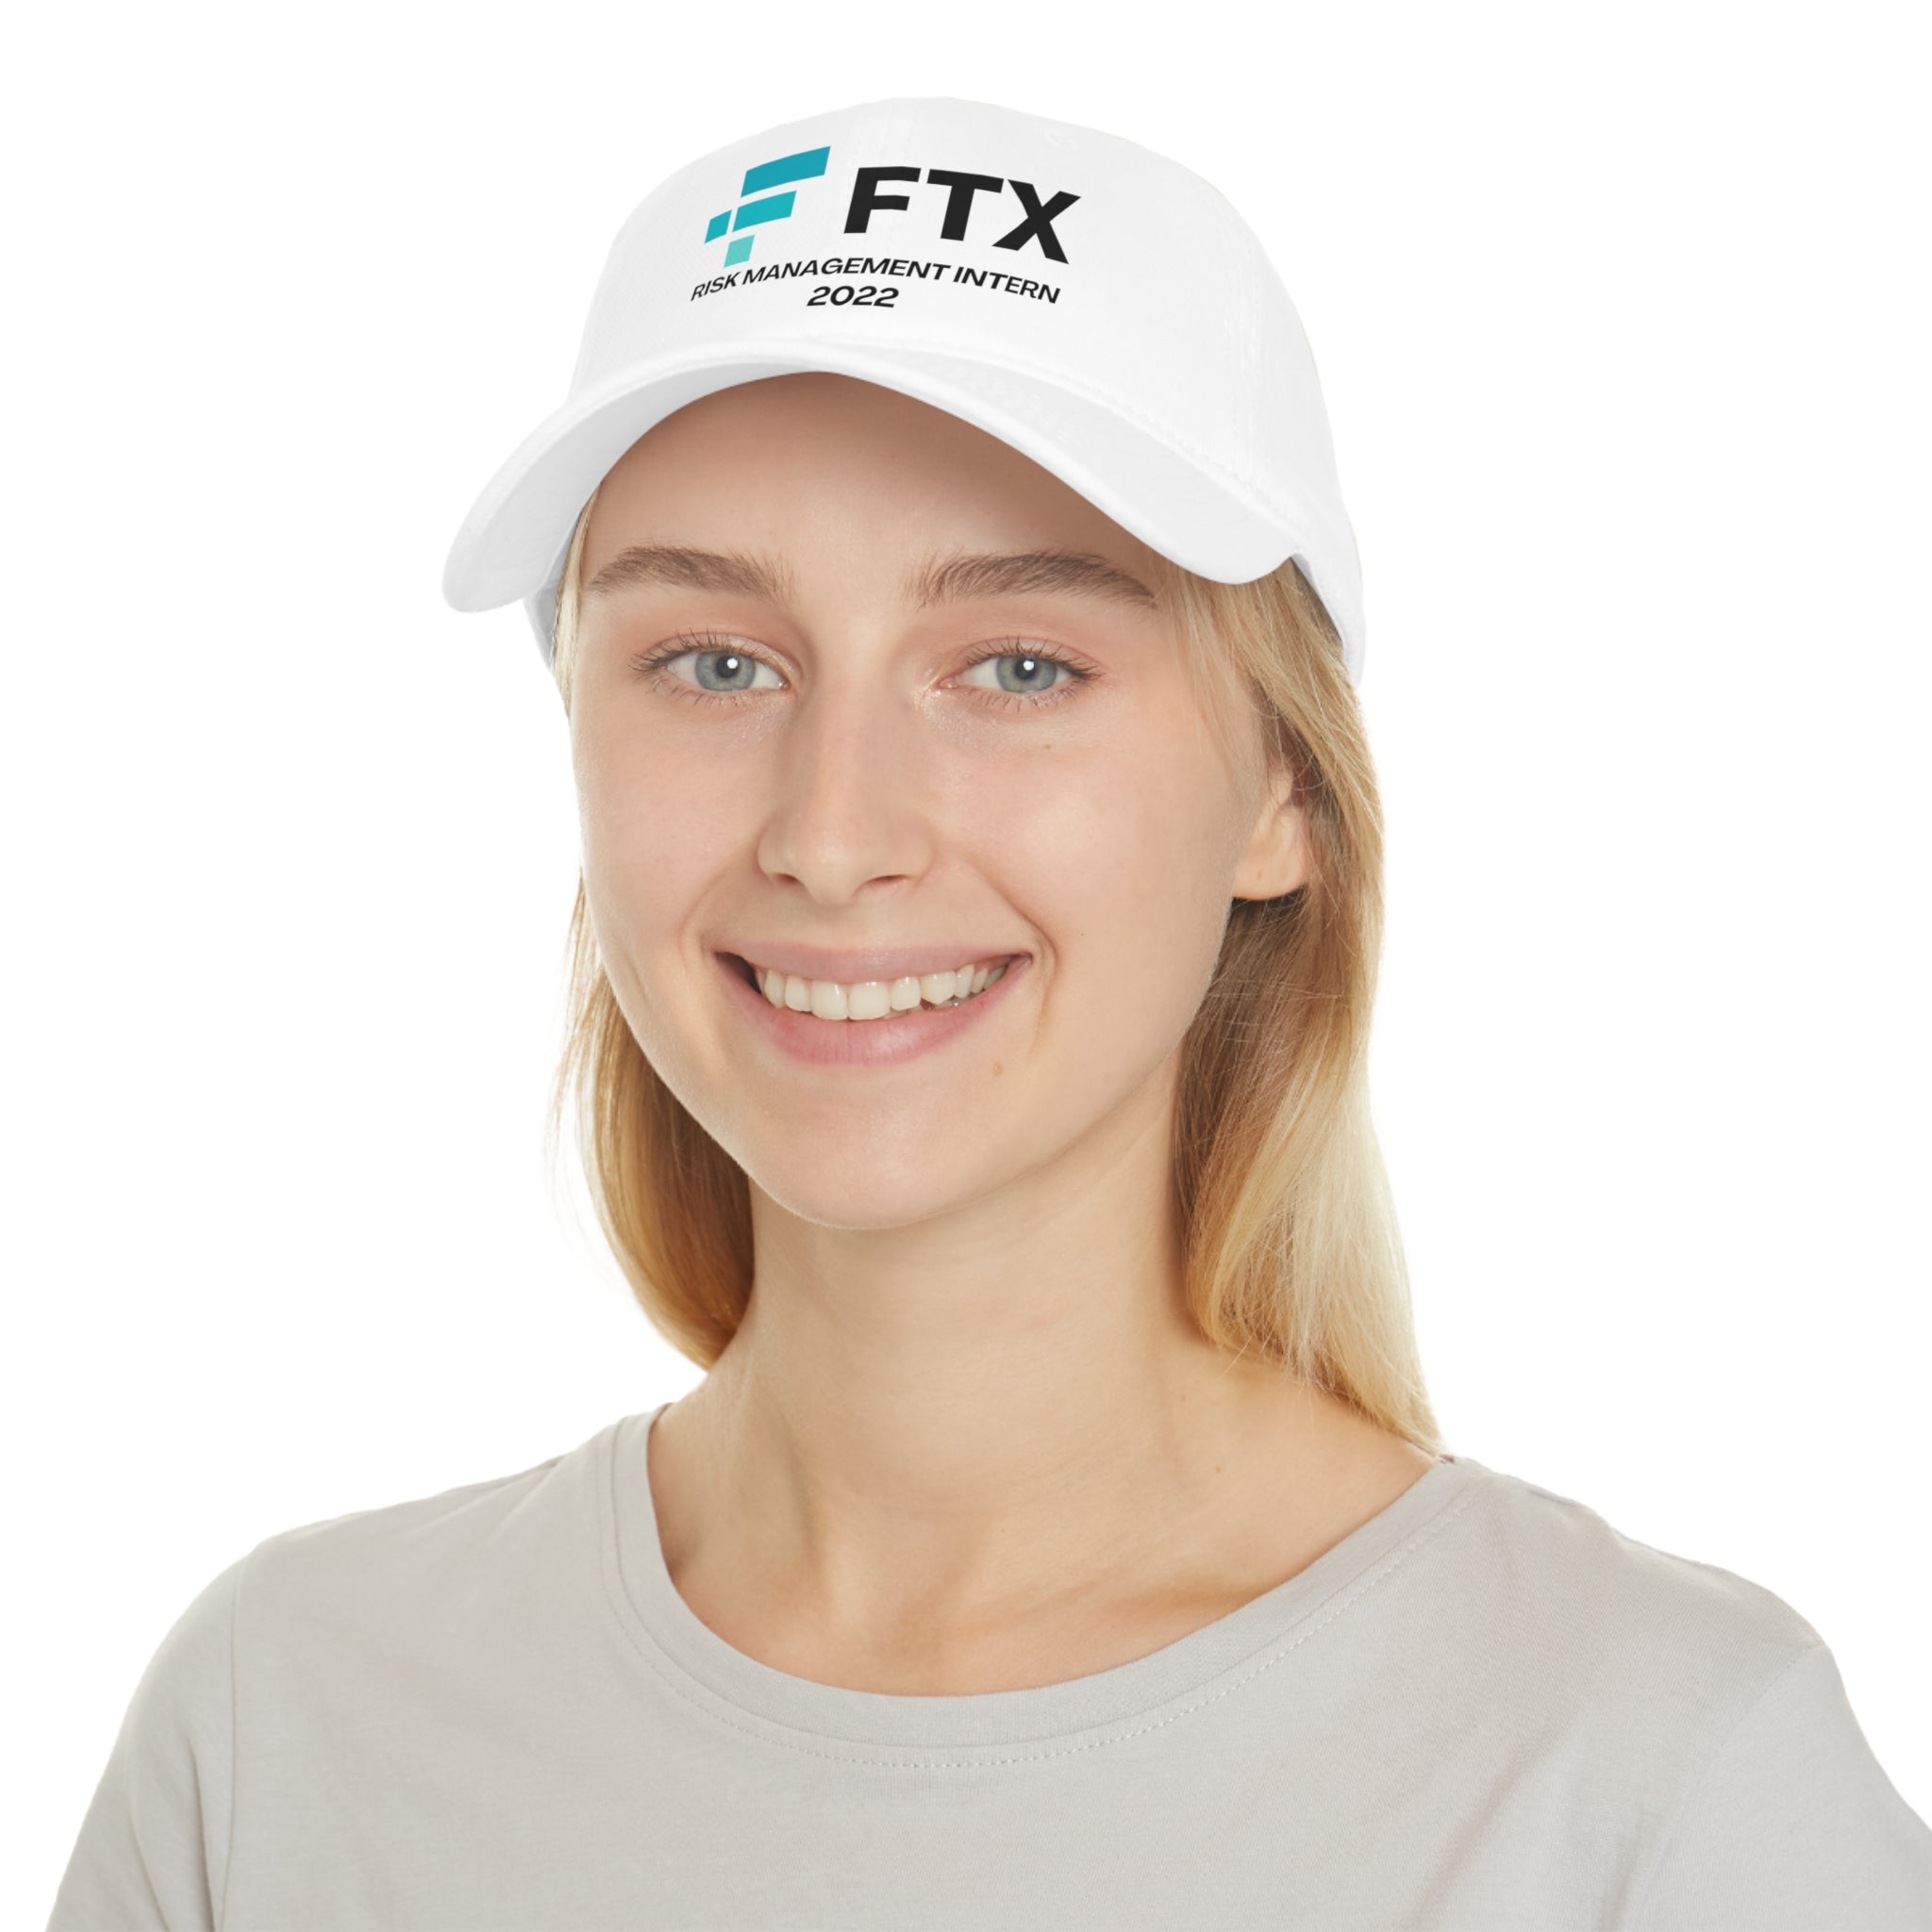 FTX Risk Management Intern 2022 - Hat